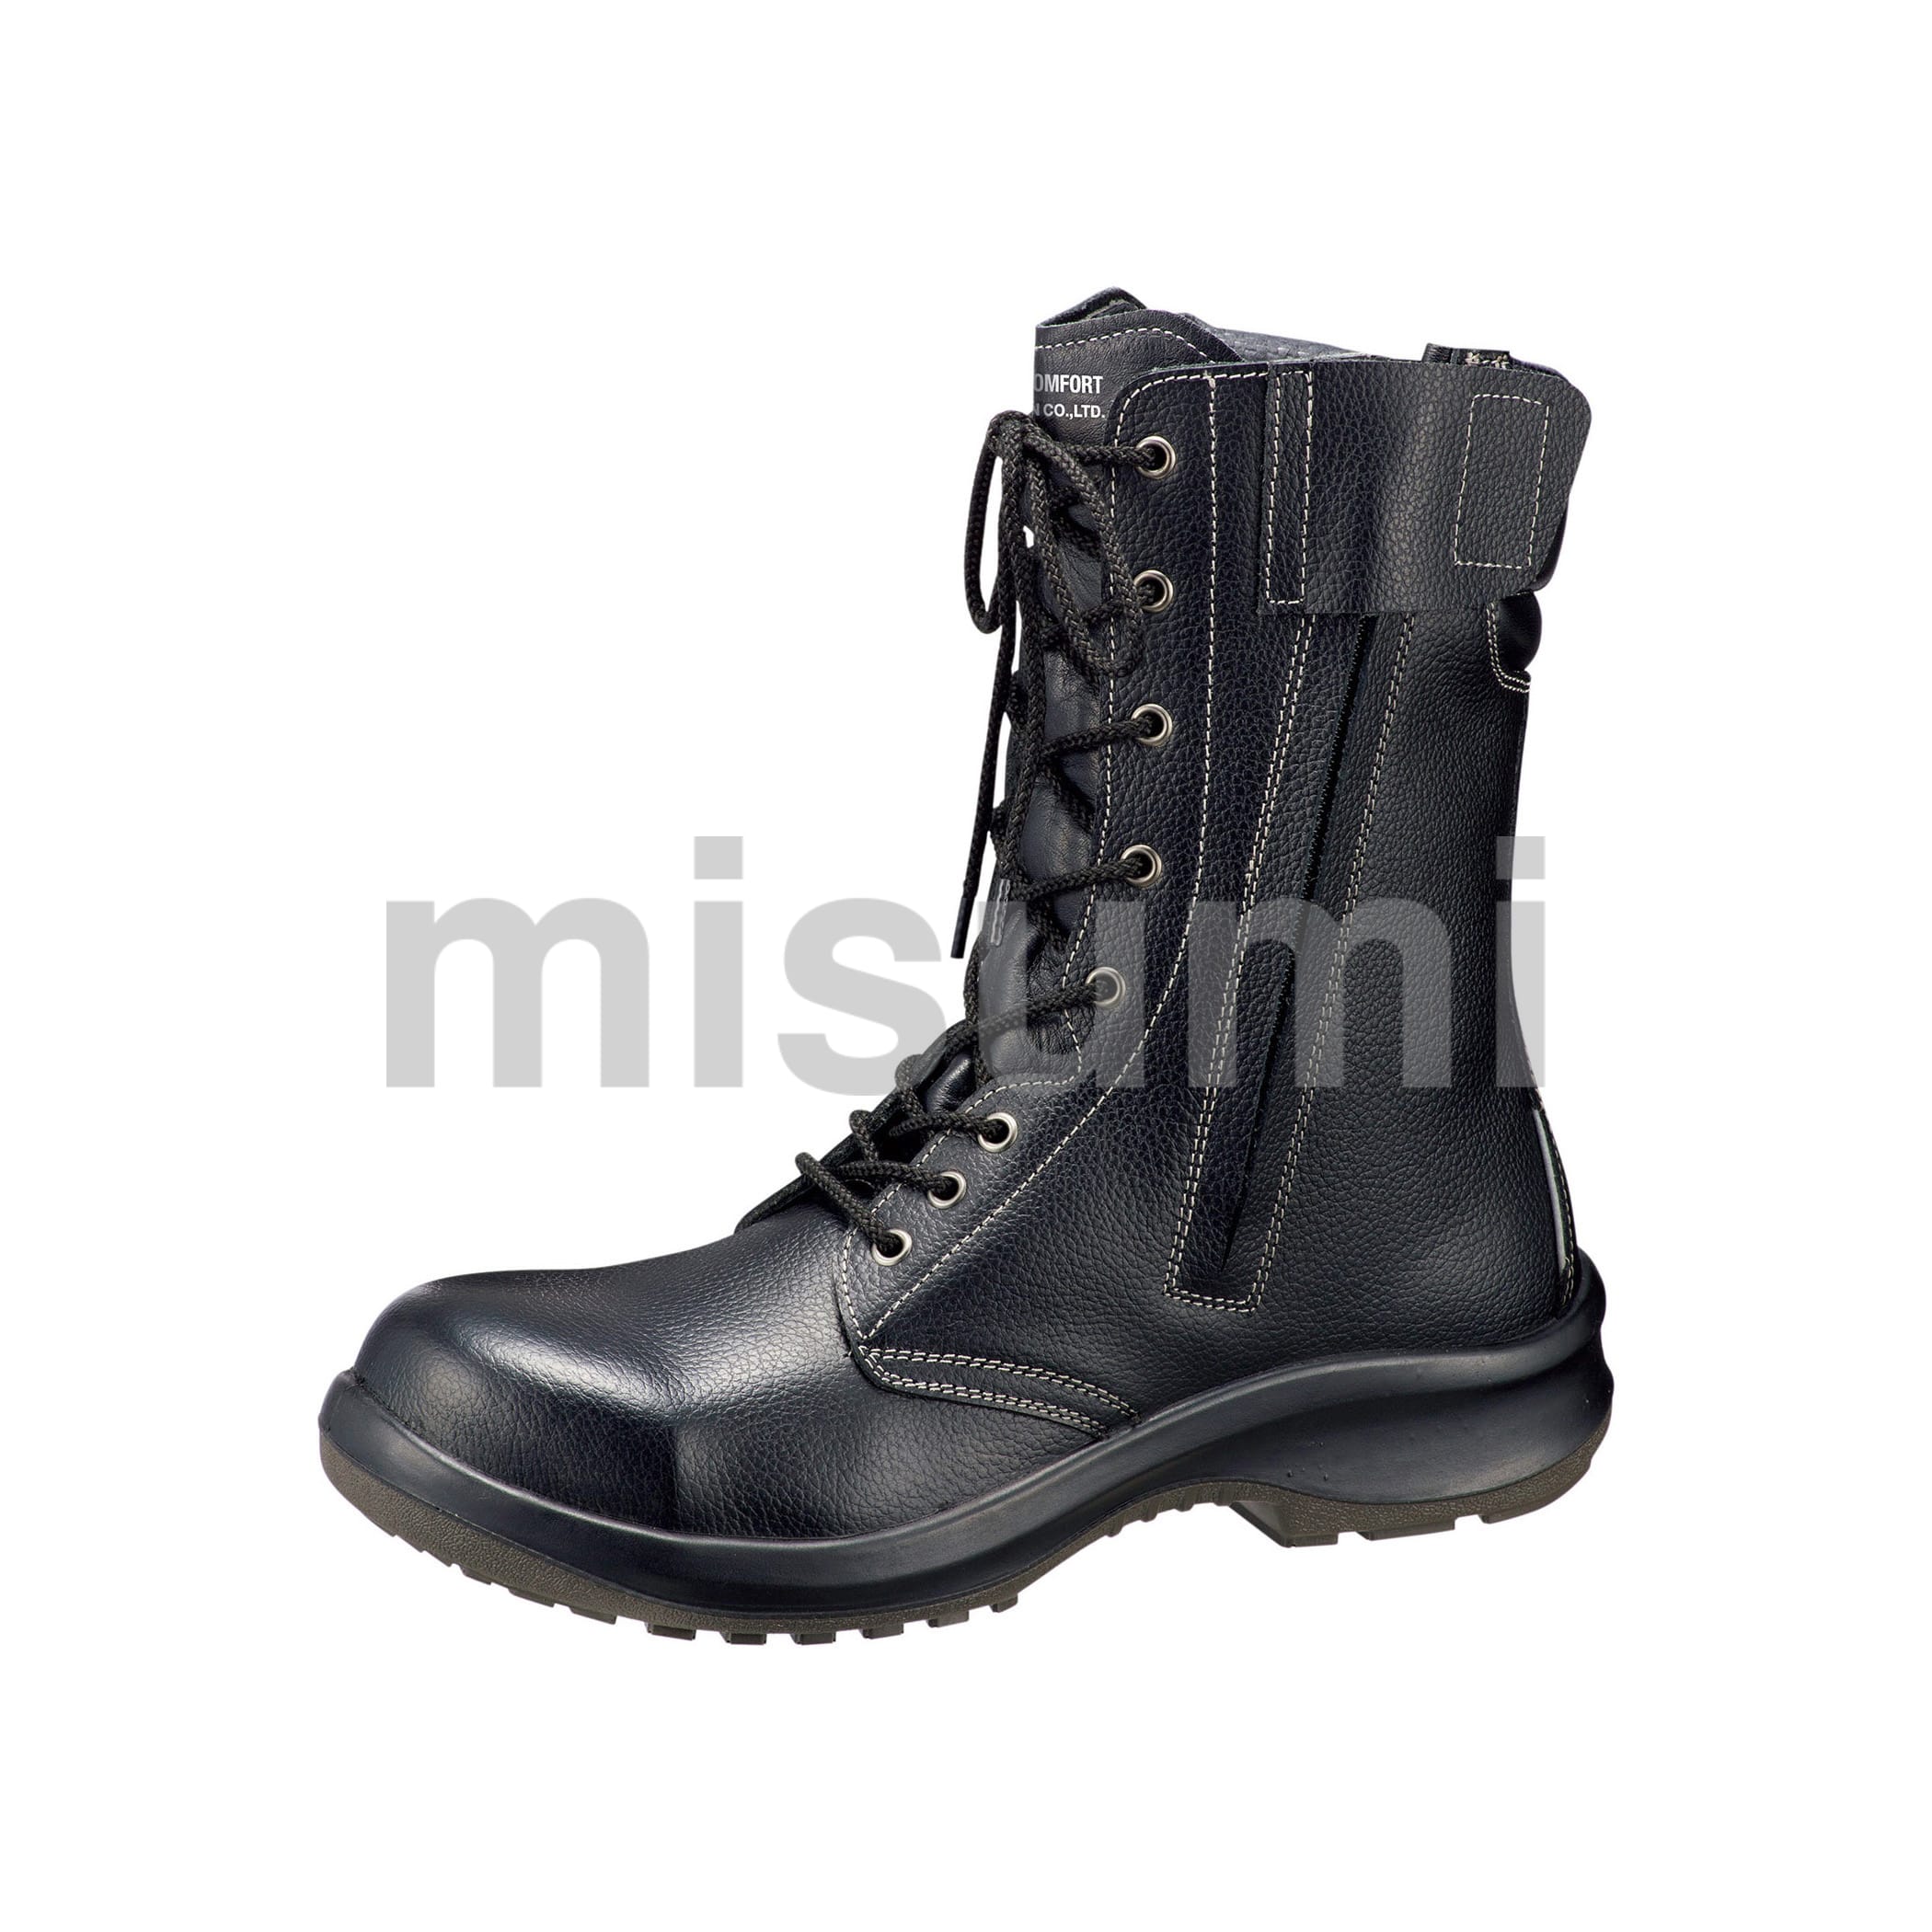 ミドリ安全 安全靴 JIS規格 マジックタイプ 長編上靴 プレミアムコンフォート PRM235 マジック ブラック 27.0 cm 3E - 3